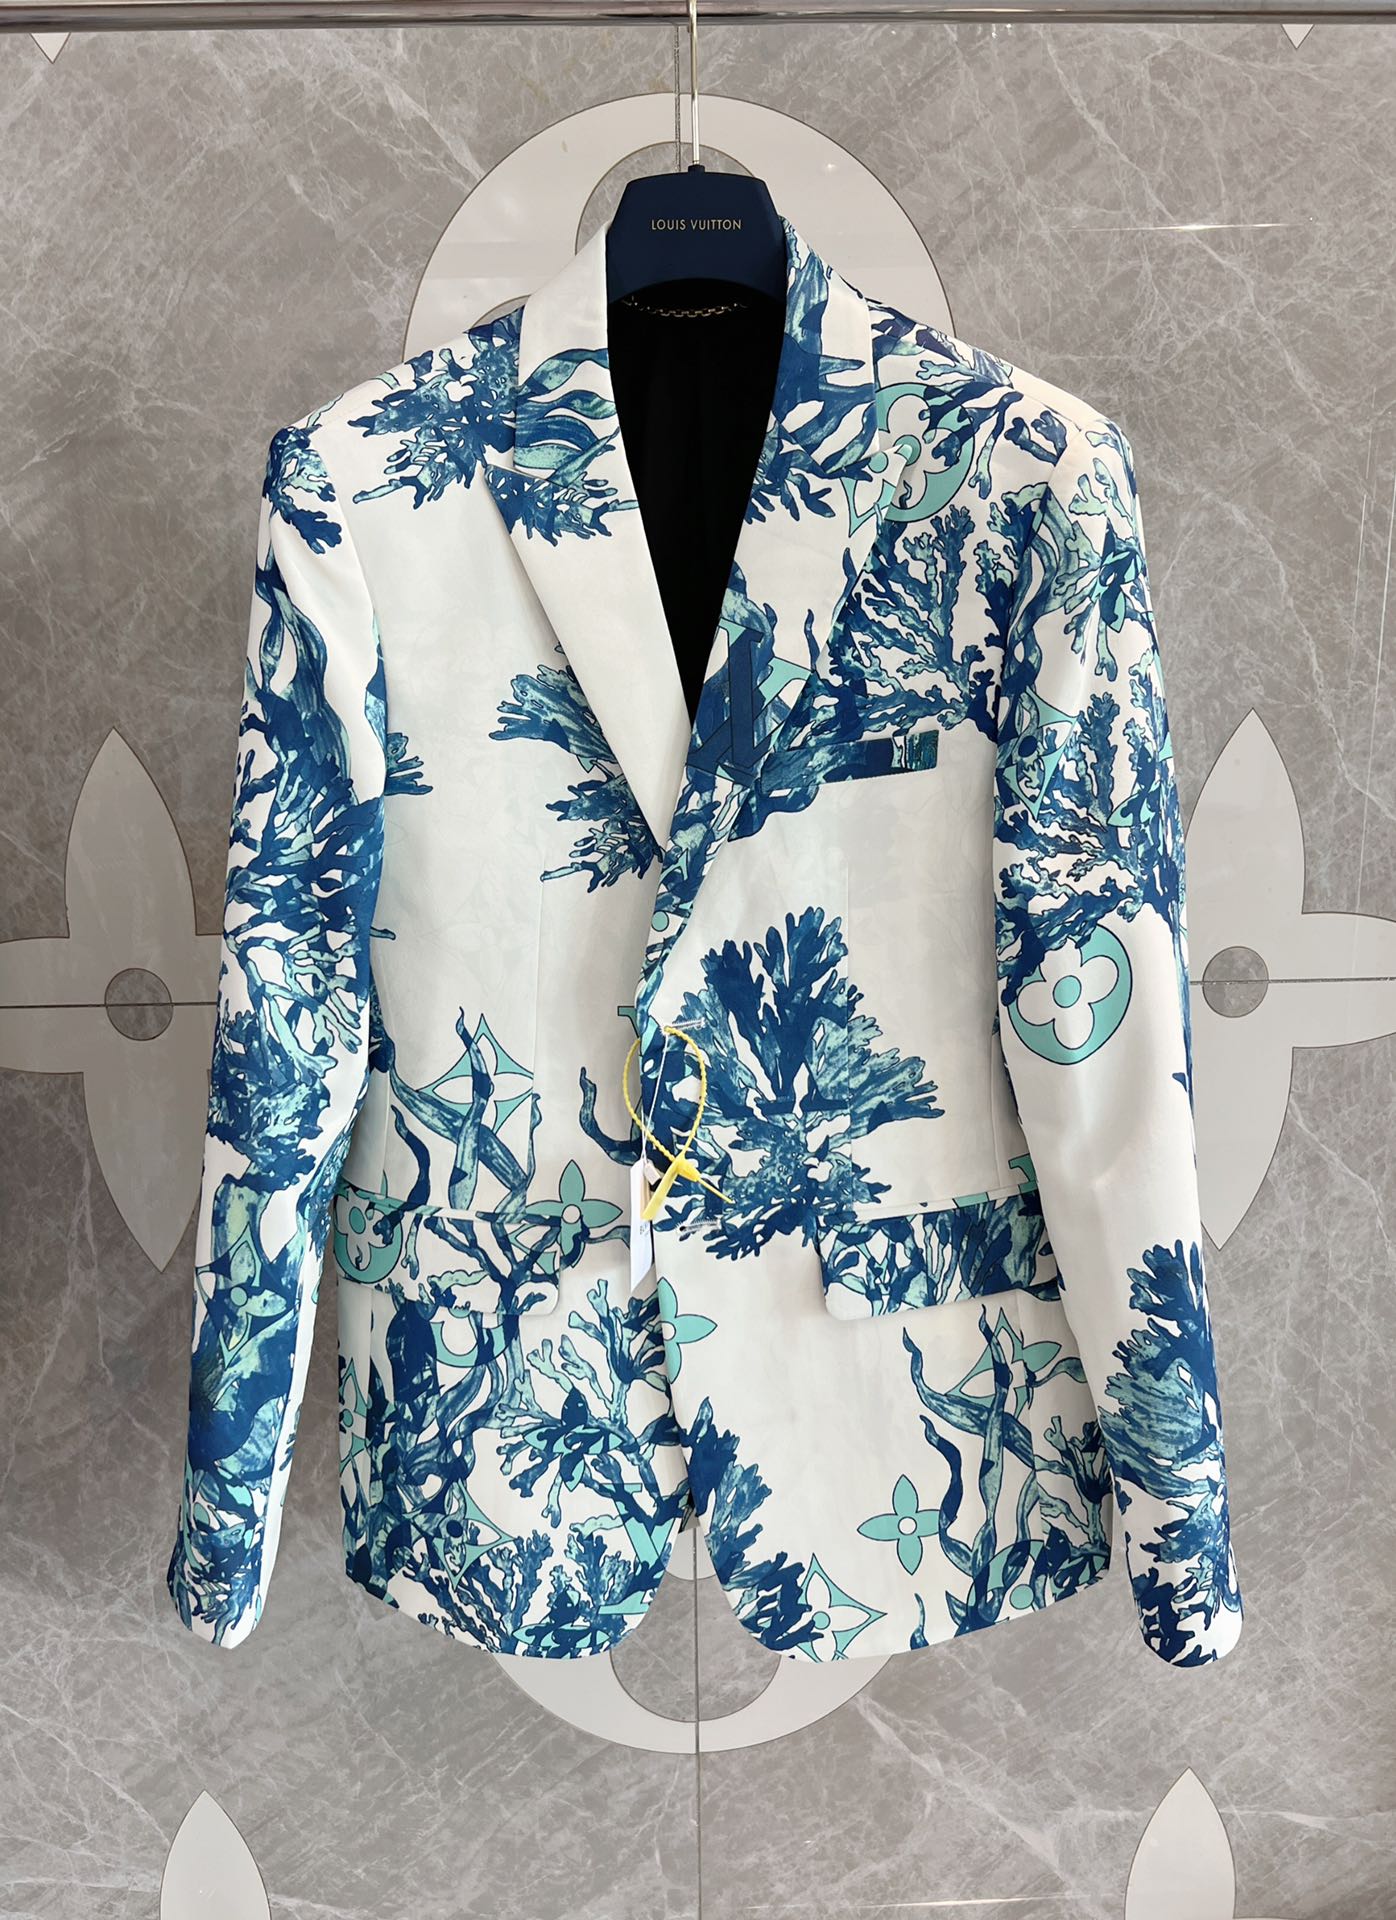 Louis Vuitton Business Suit